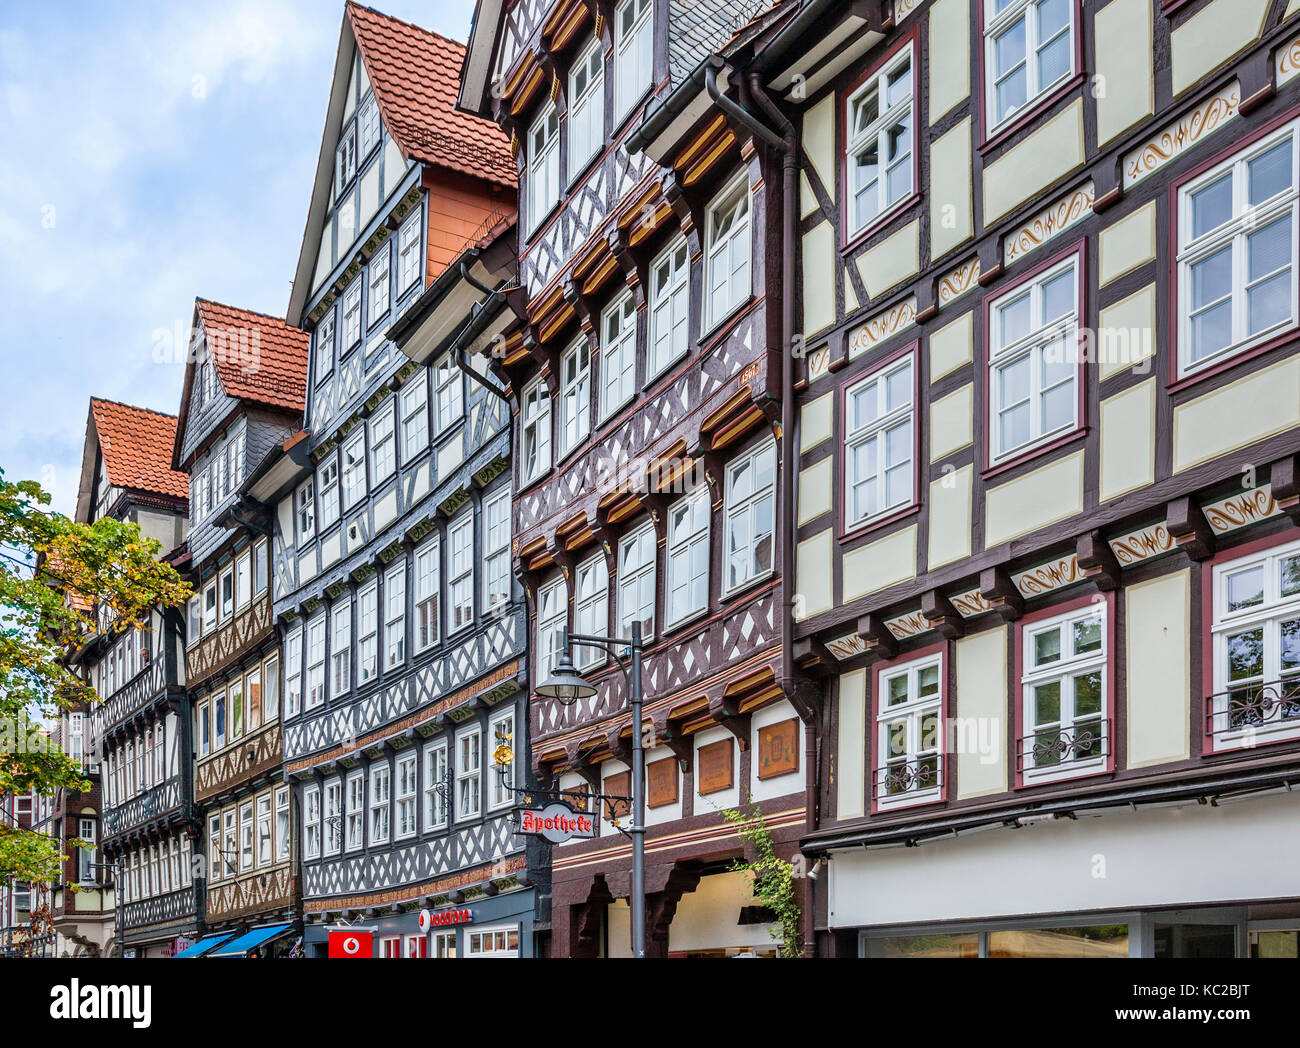 Allemagne, Basse-Saxe, Hann. Münden, cité médiévale avec des maisons à colombages à Lange Strasse Banque D'Images